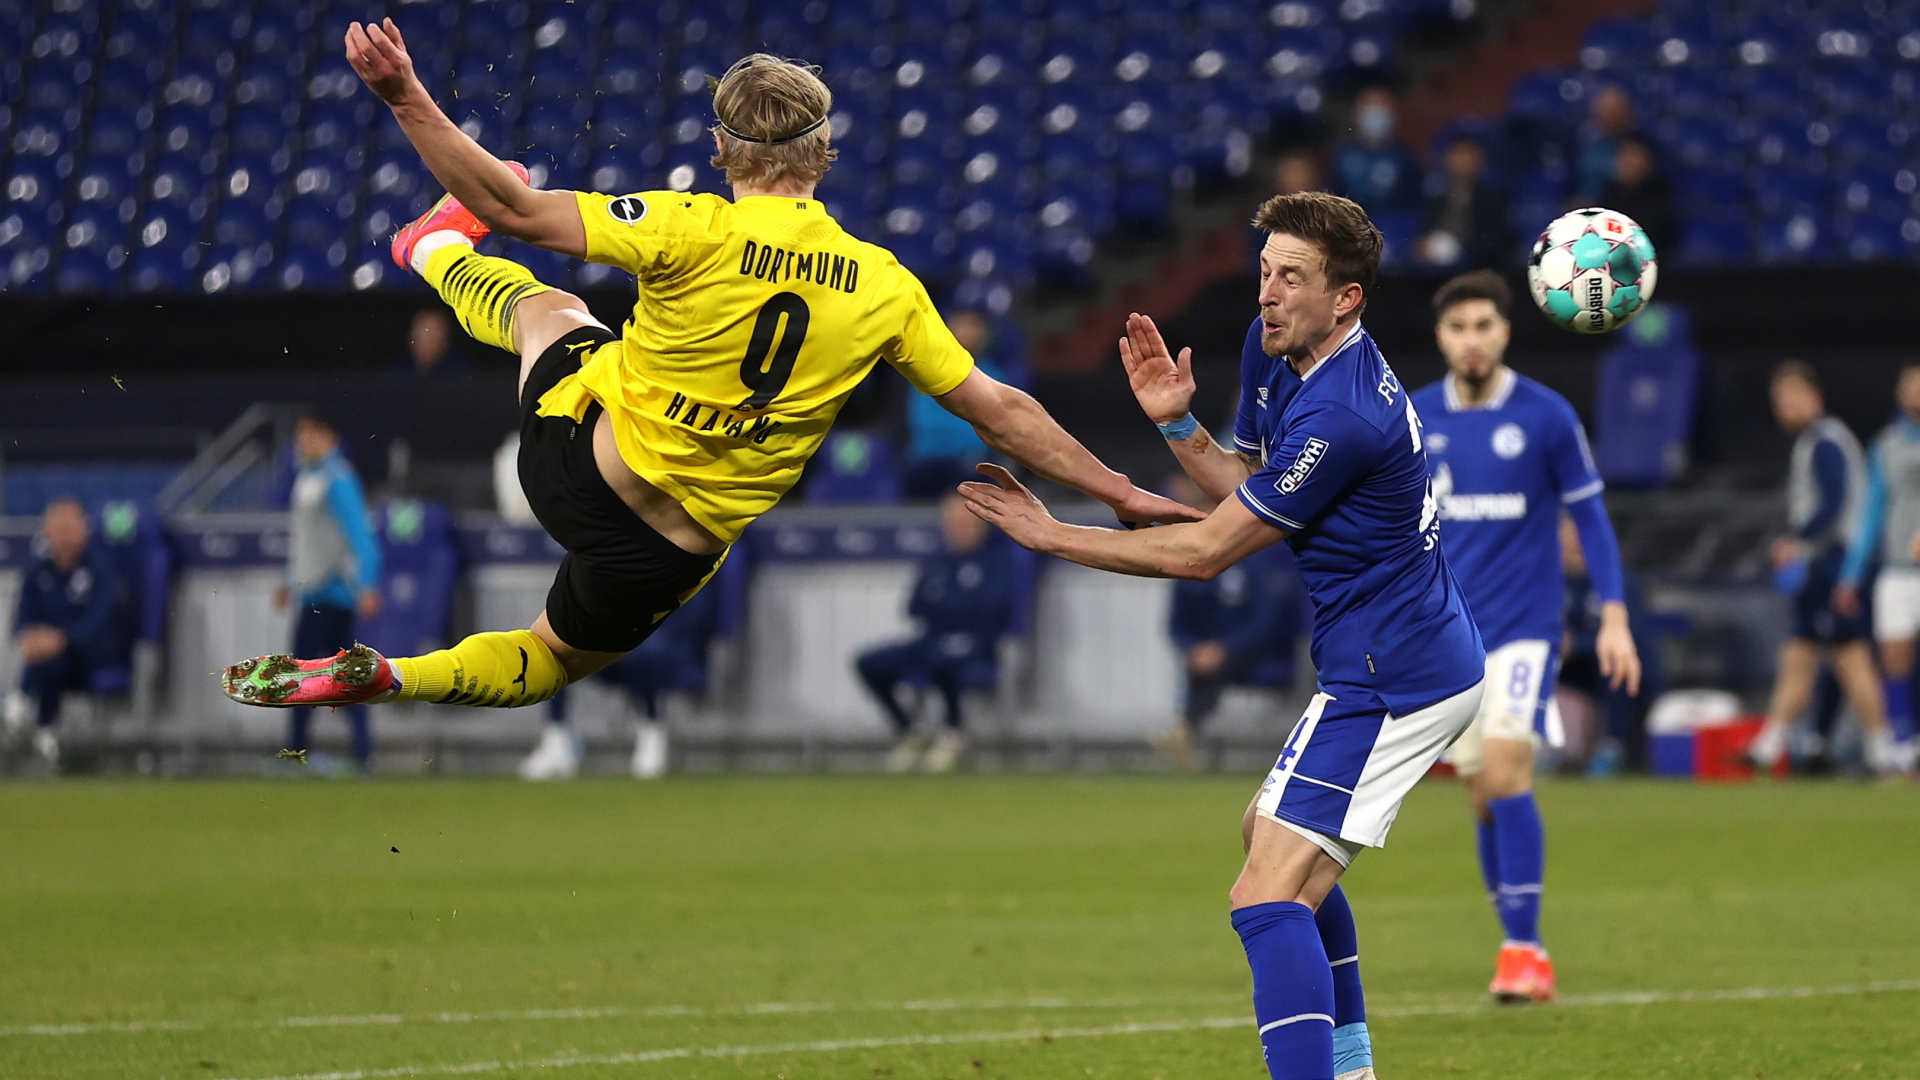 Der Angreifer Erling Haaland schießt sein Team Borussia Dortmund zur 2:0-Führung gegen den FC Schalke 04. | EPA